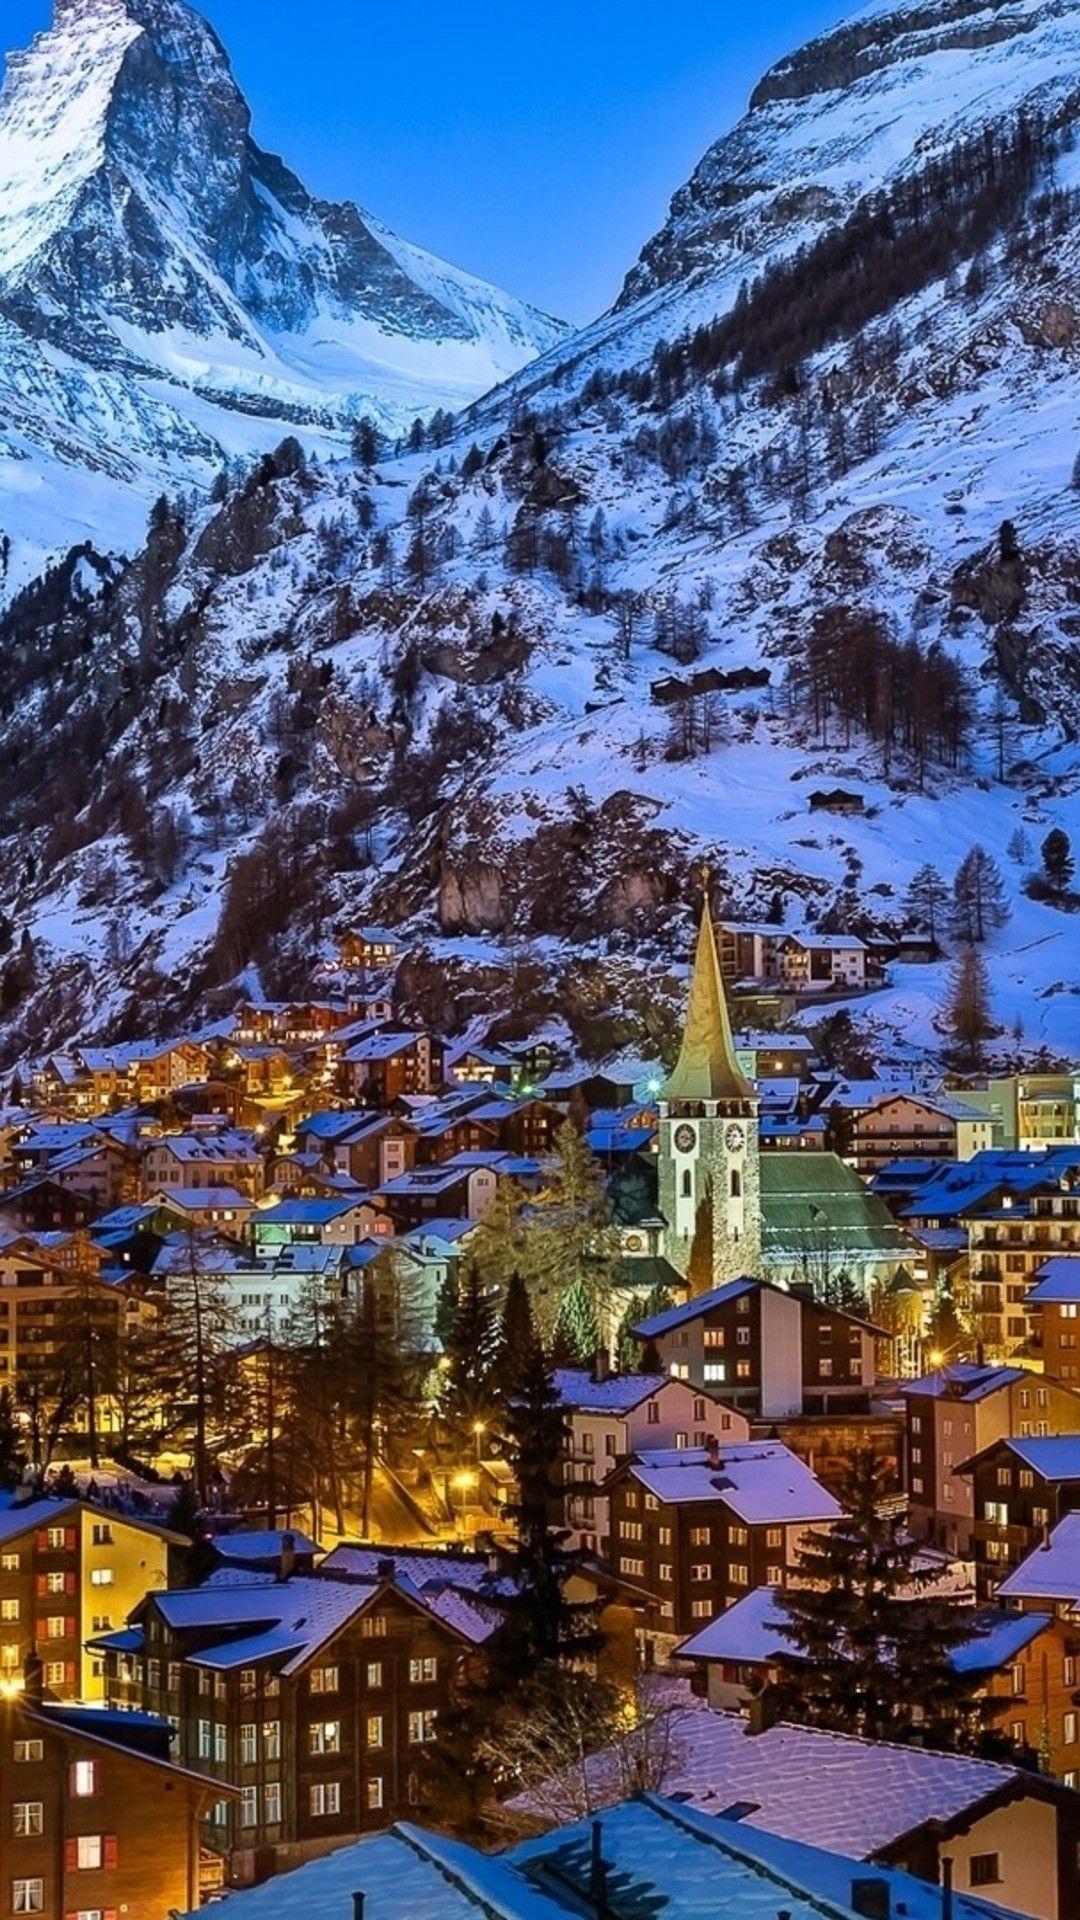 Thưởng ngoạn vẻ đẹp hoang sơ của Thụy Sĩ, đất nước nổi tiếng với những ngọn núi hùng vĩ, hồ nước trong xanh, và kiến trúc cổ kính. Xem những bức ảnh chất lượng cao để tận hưởng cuộc phiêu lưu trên quê hương này!